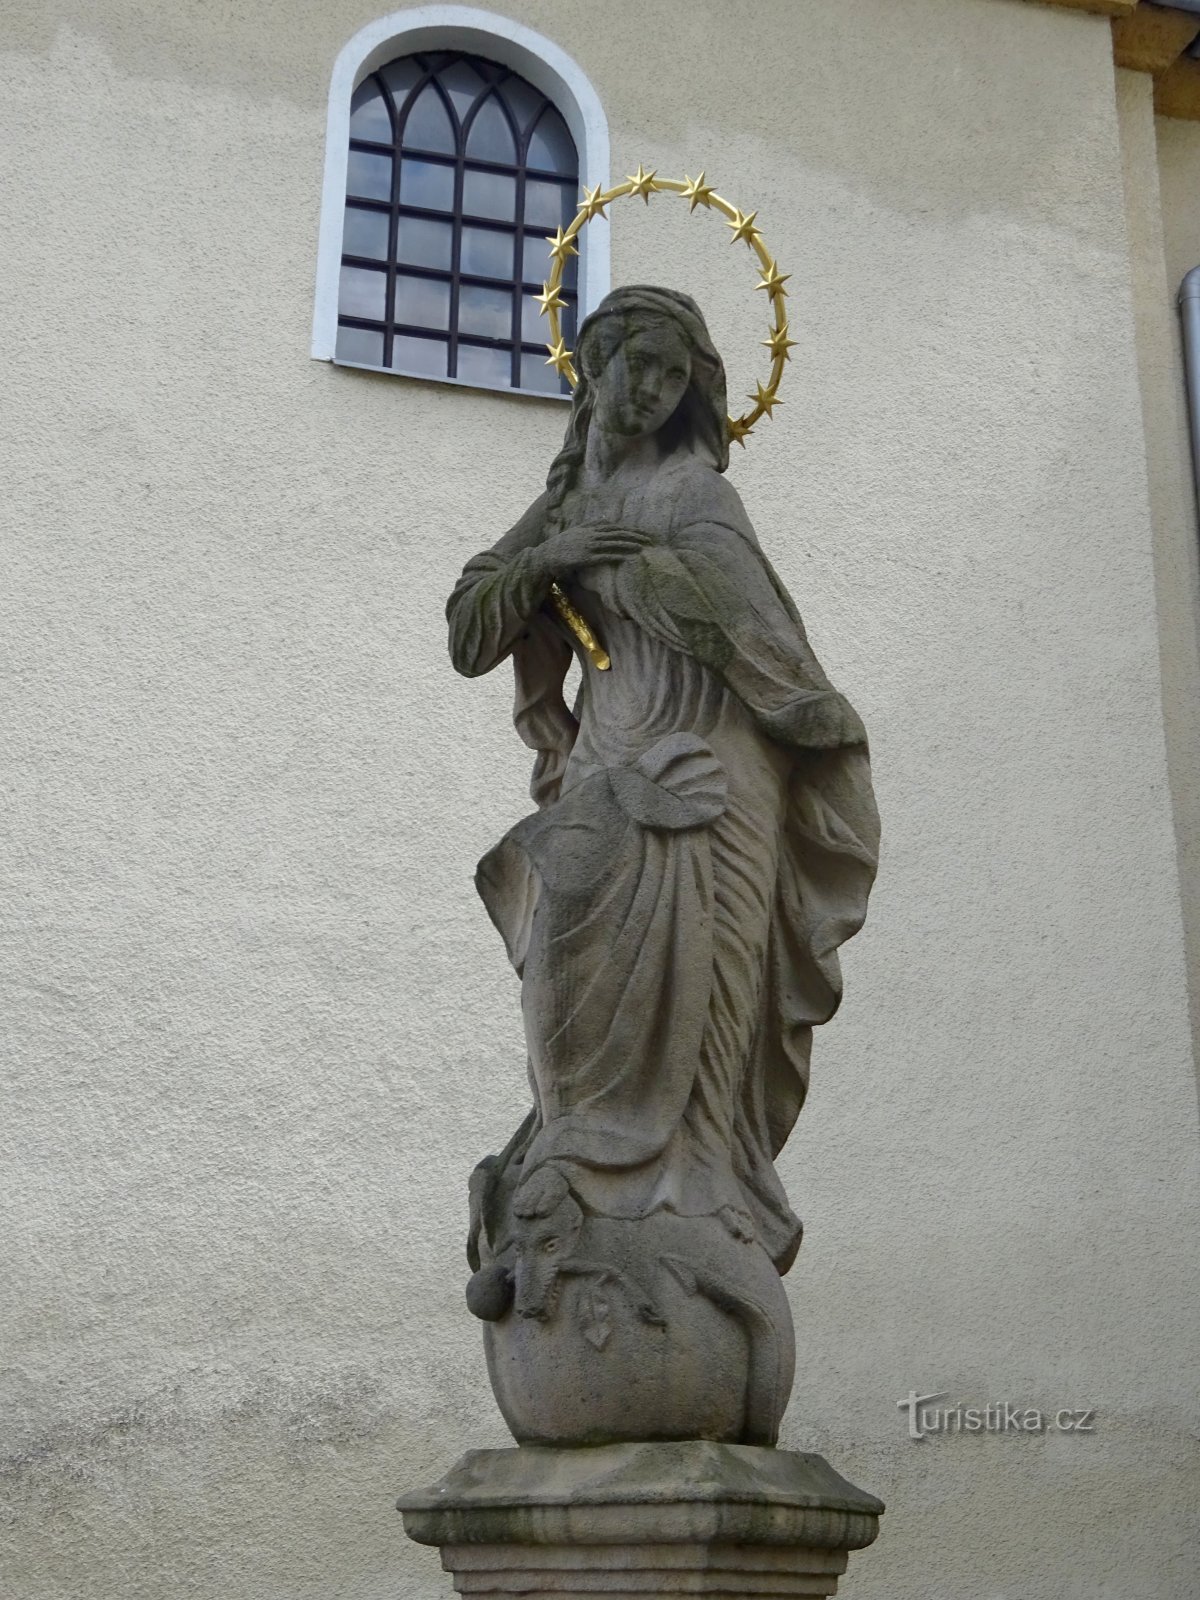 Klimkovice - estátua da Virgem Maria